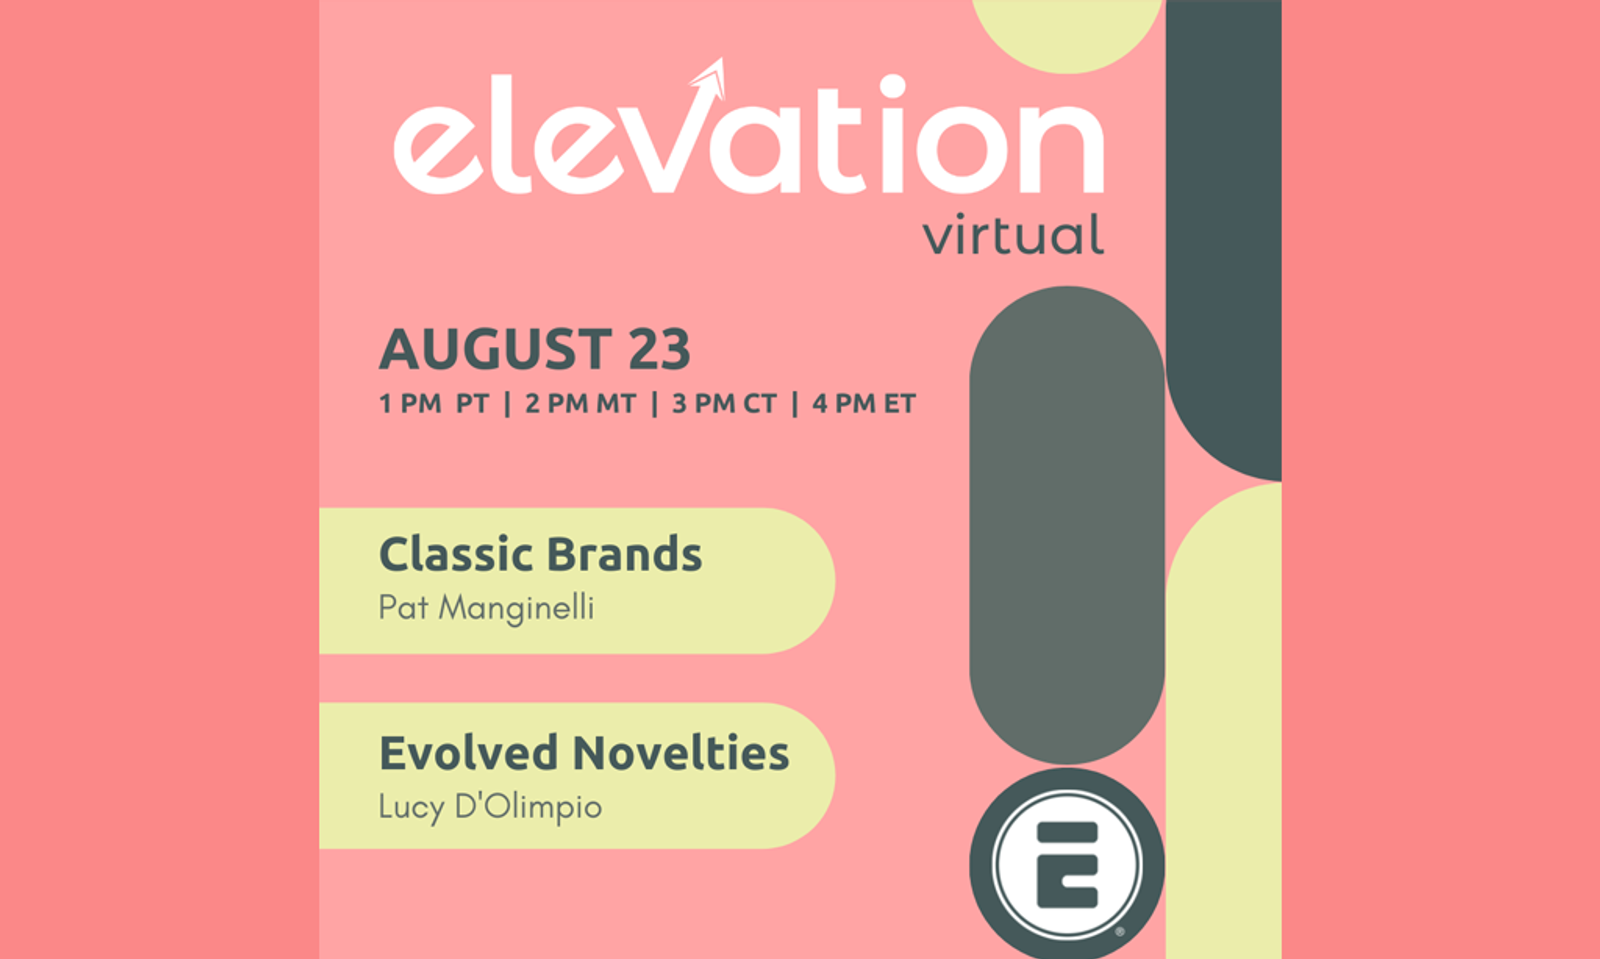 Eldorado to Host Virtual Elevation